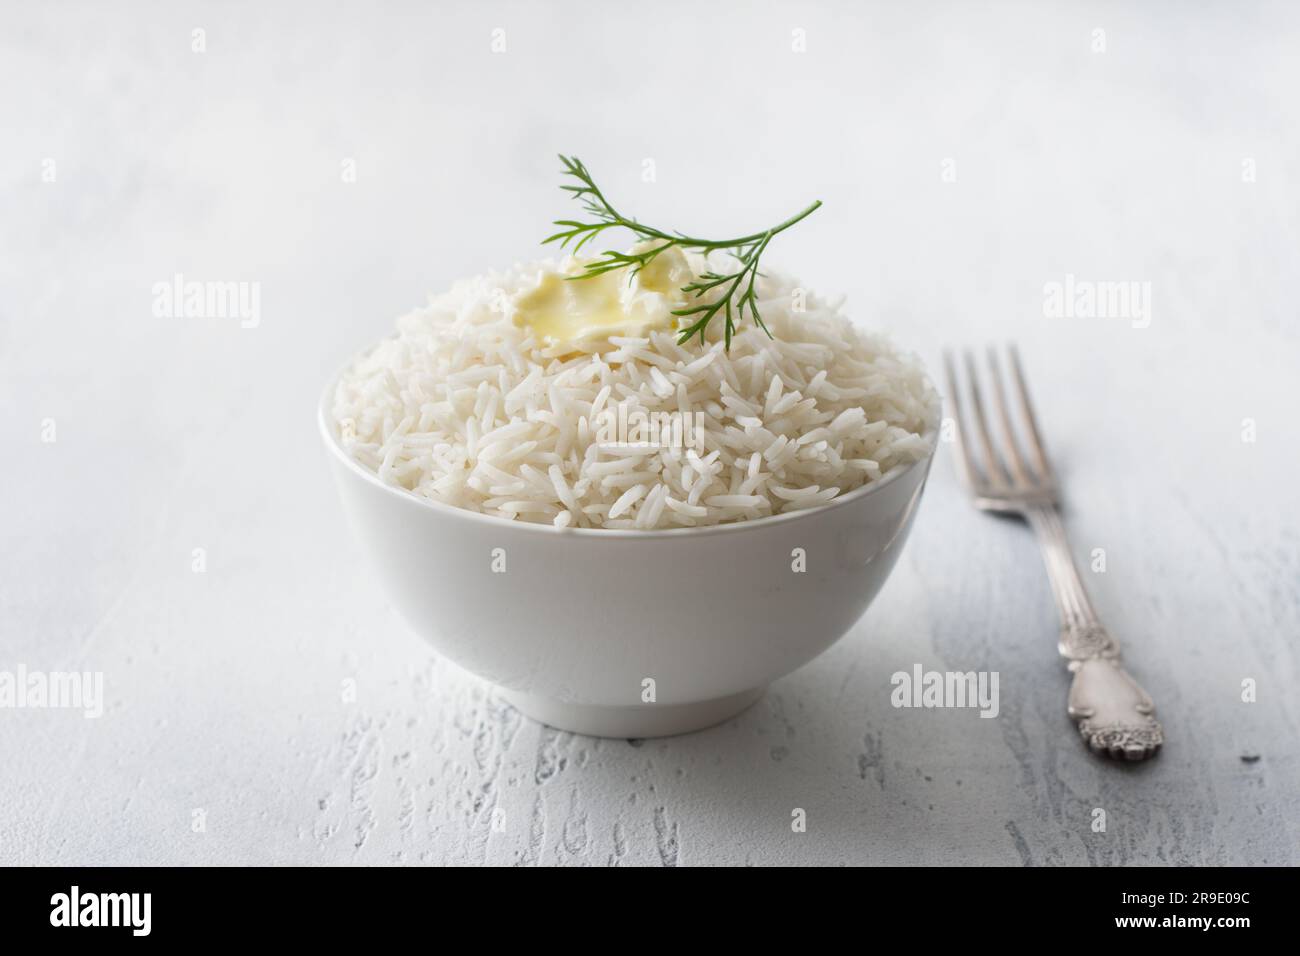 Un recipiente di riso a grani lunghi al vapore con burro e un ciuffo di aneto su sfondo grigio chiaro. Foto Stock